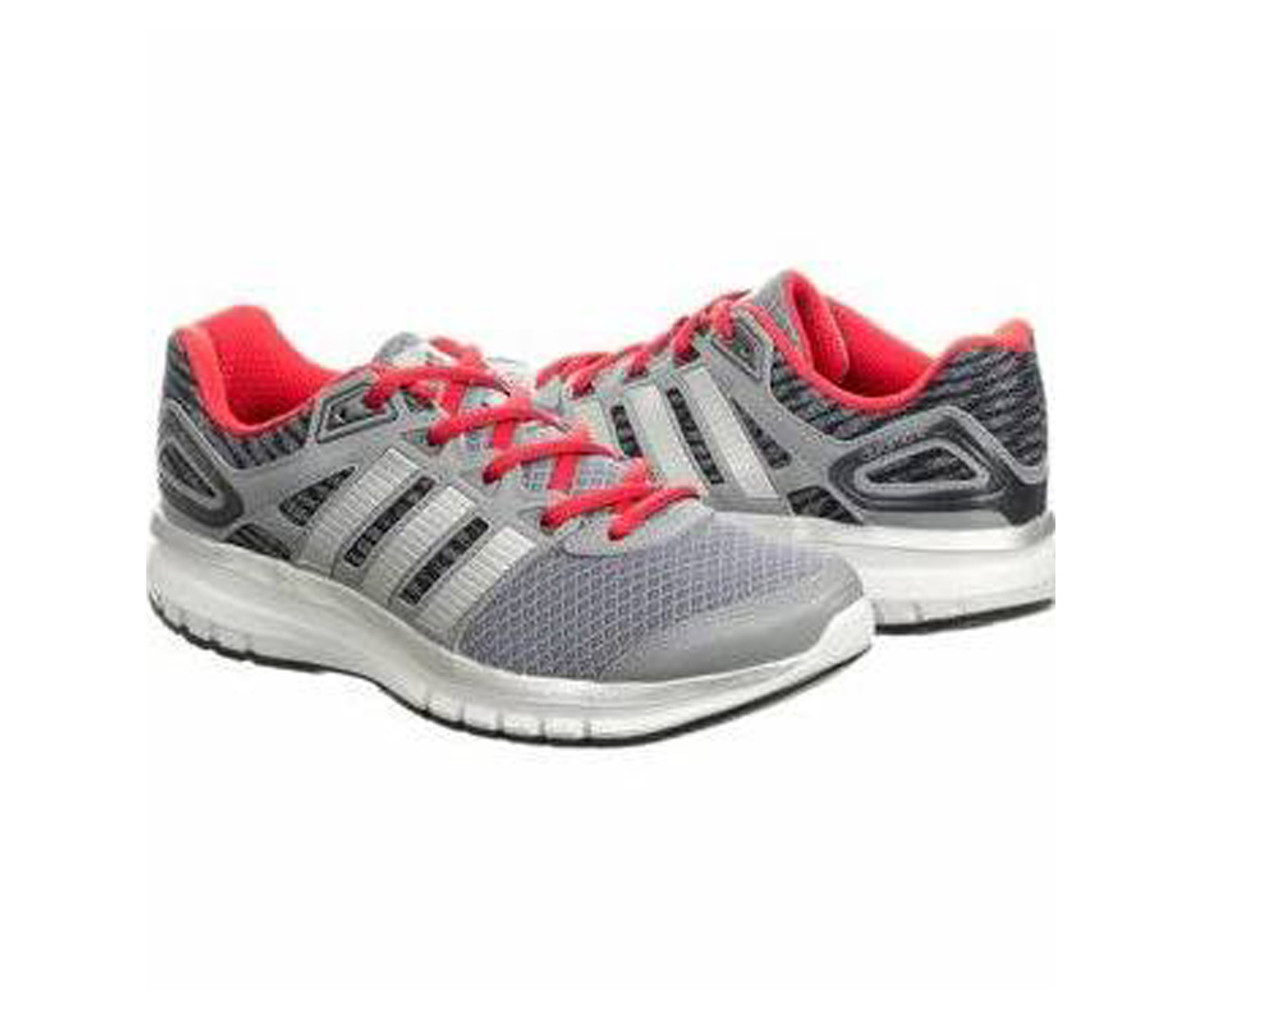 Adidas Men's Duramo 6 Shoes - Grey | Discount Adidas Men's Athletic & - | Shoolu.com